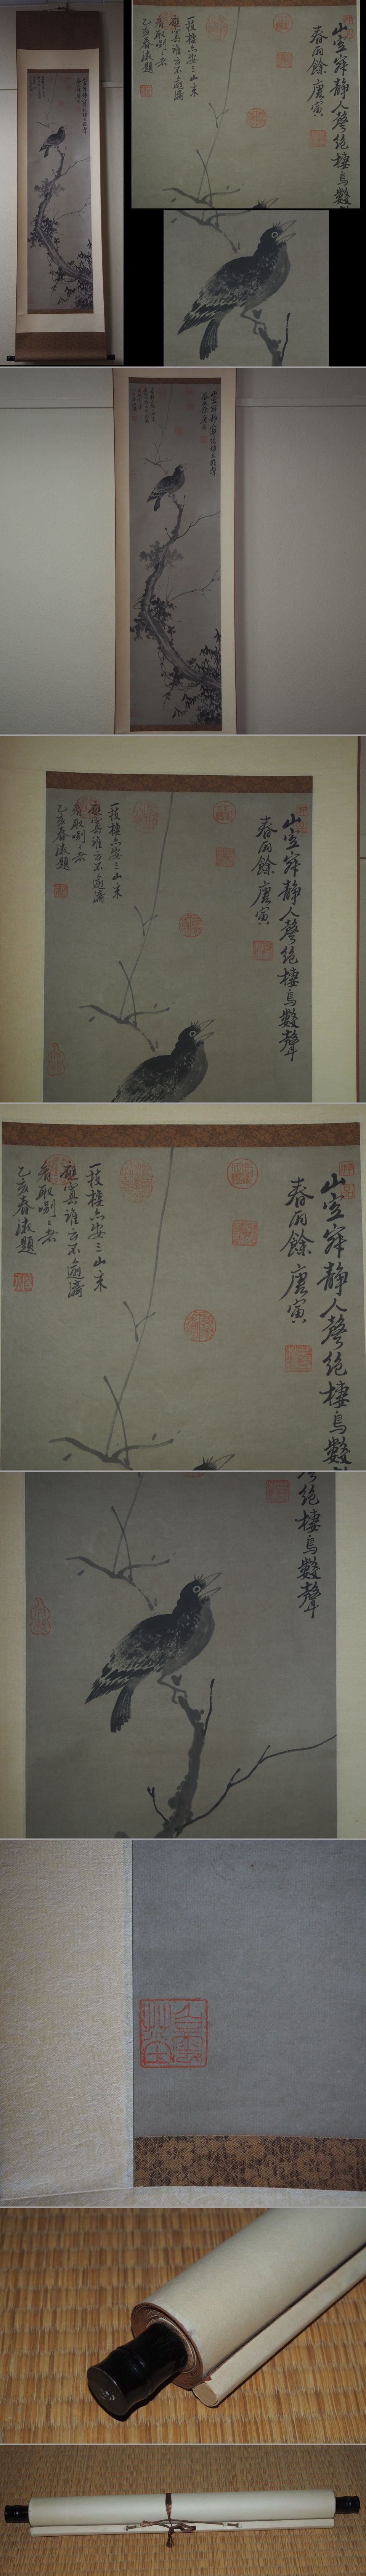 最大級倣唐寅花鳥掛け軸　紙本肉筆　全体180×44.5ｃｍ　中国美術 花鳥、鳥獣